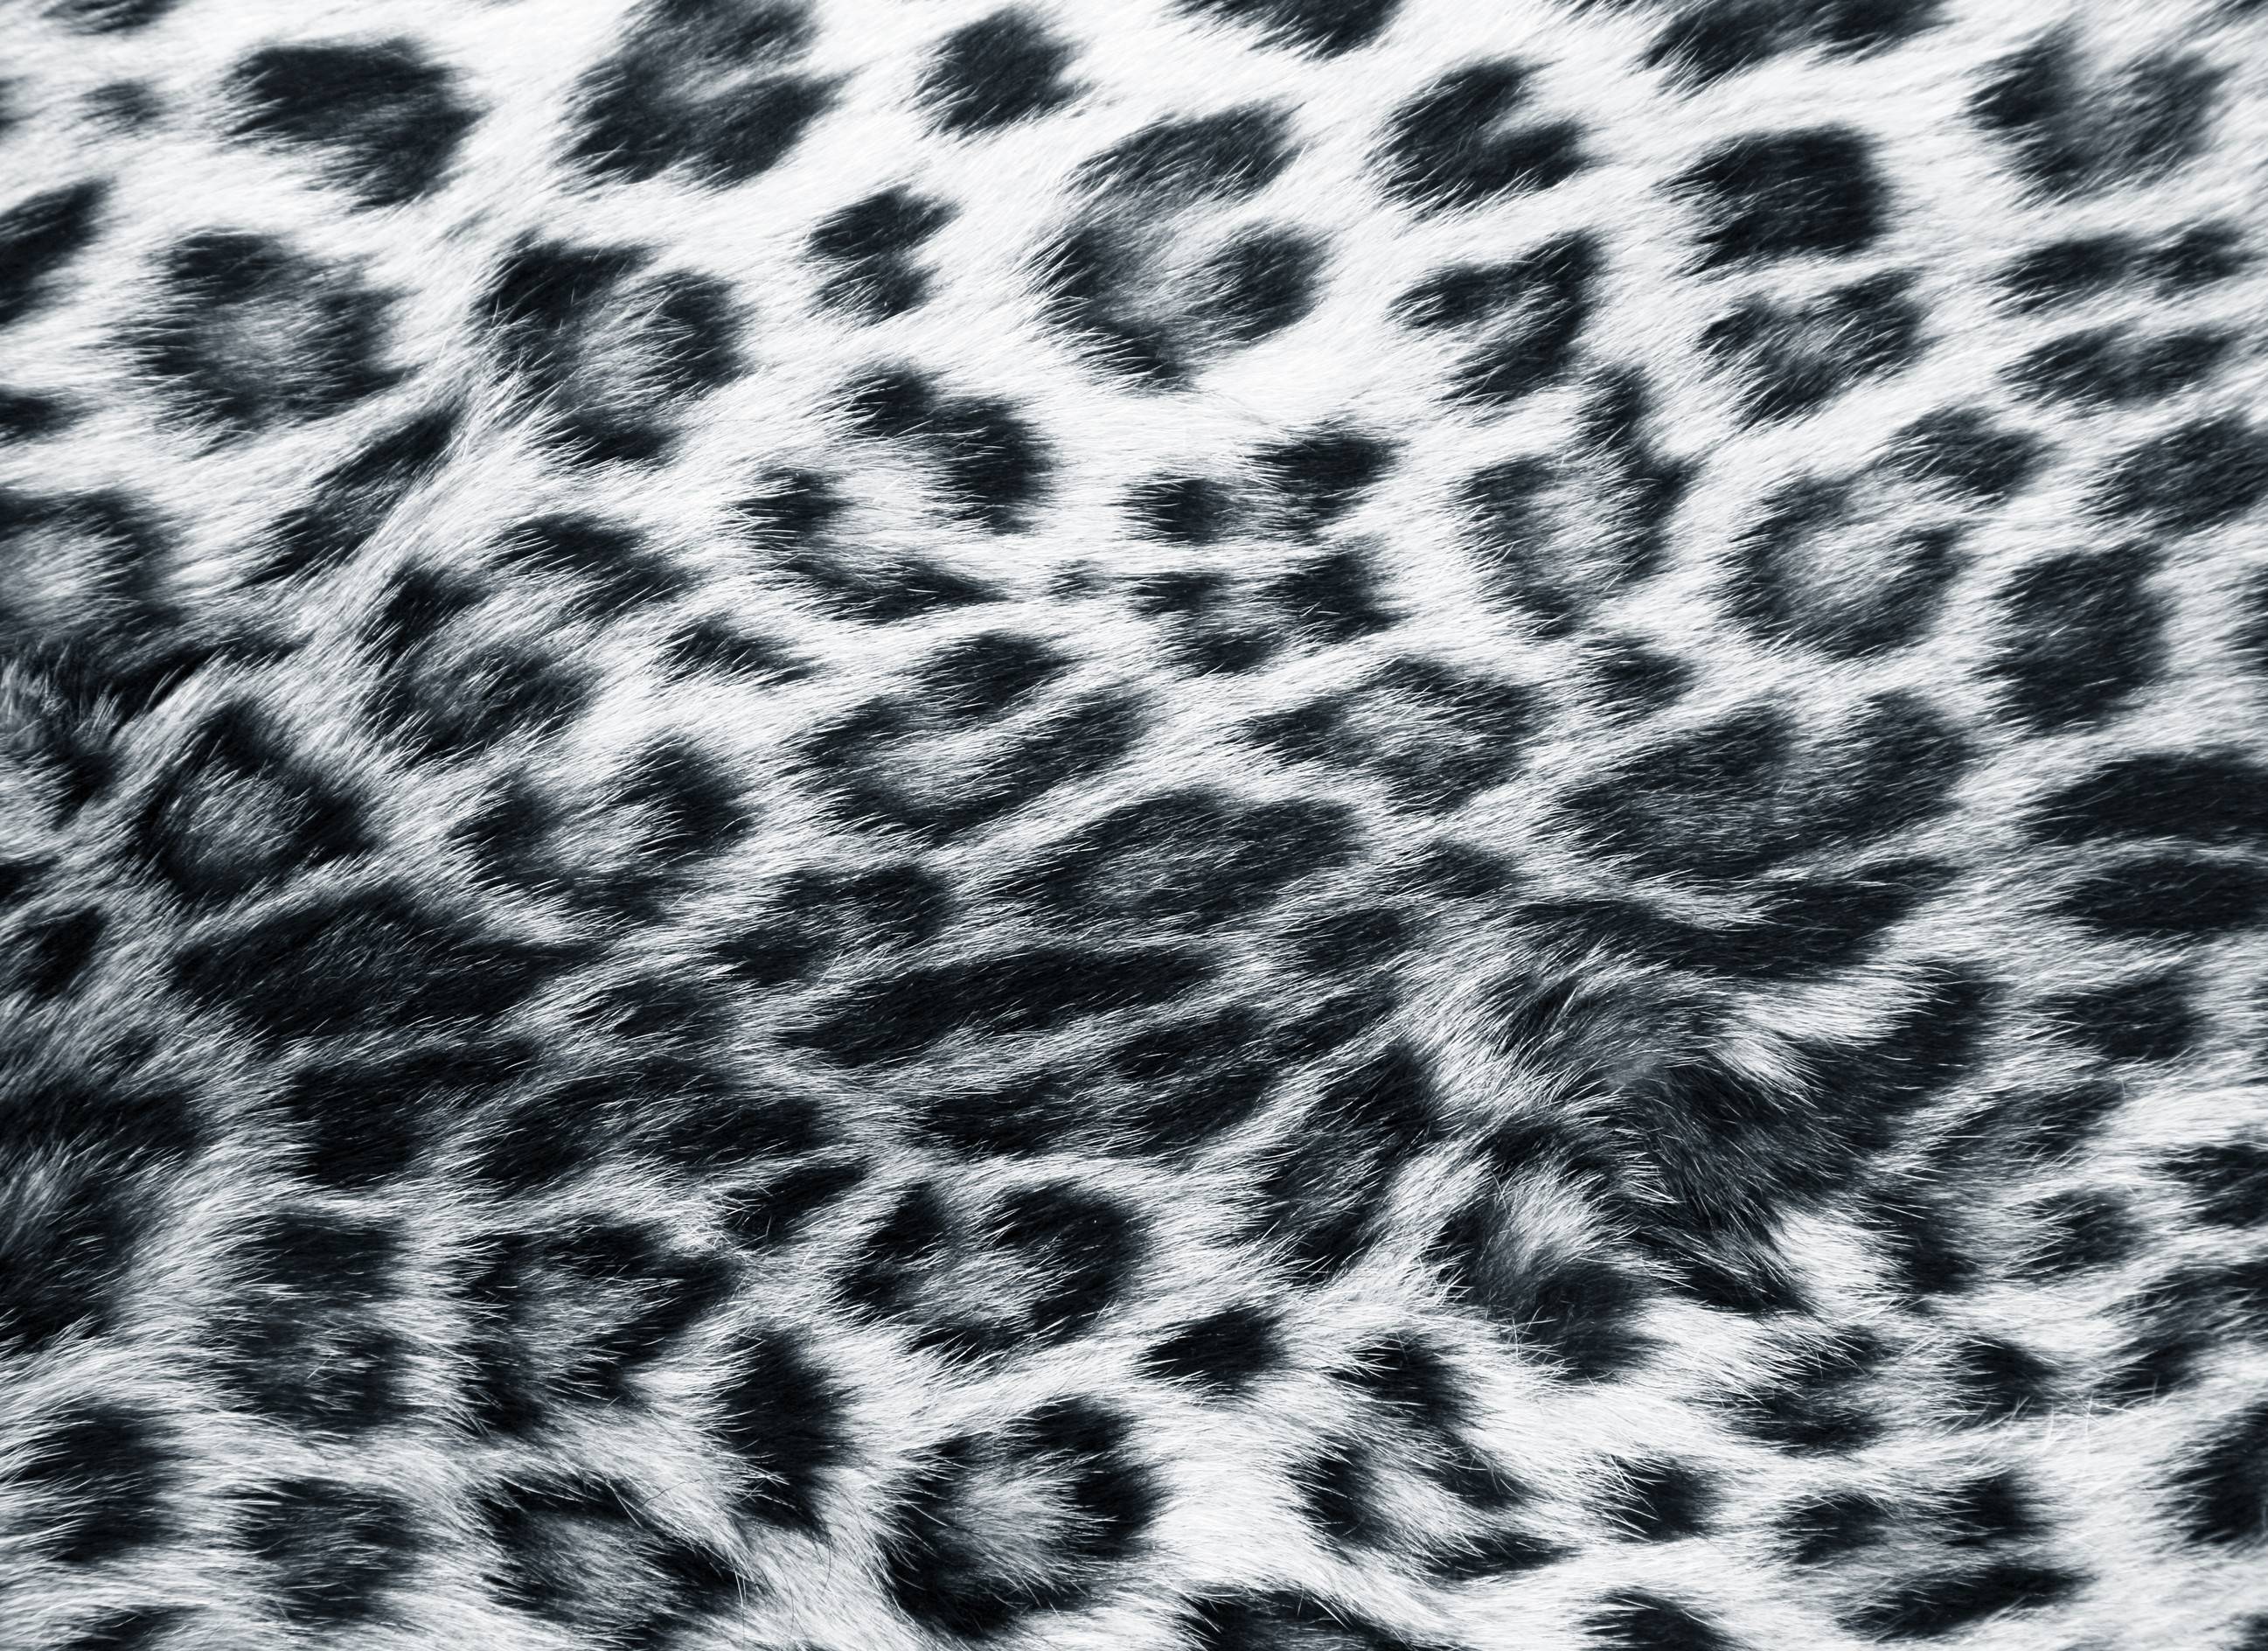 Tiger print wallpaper